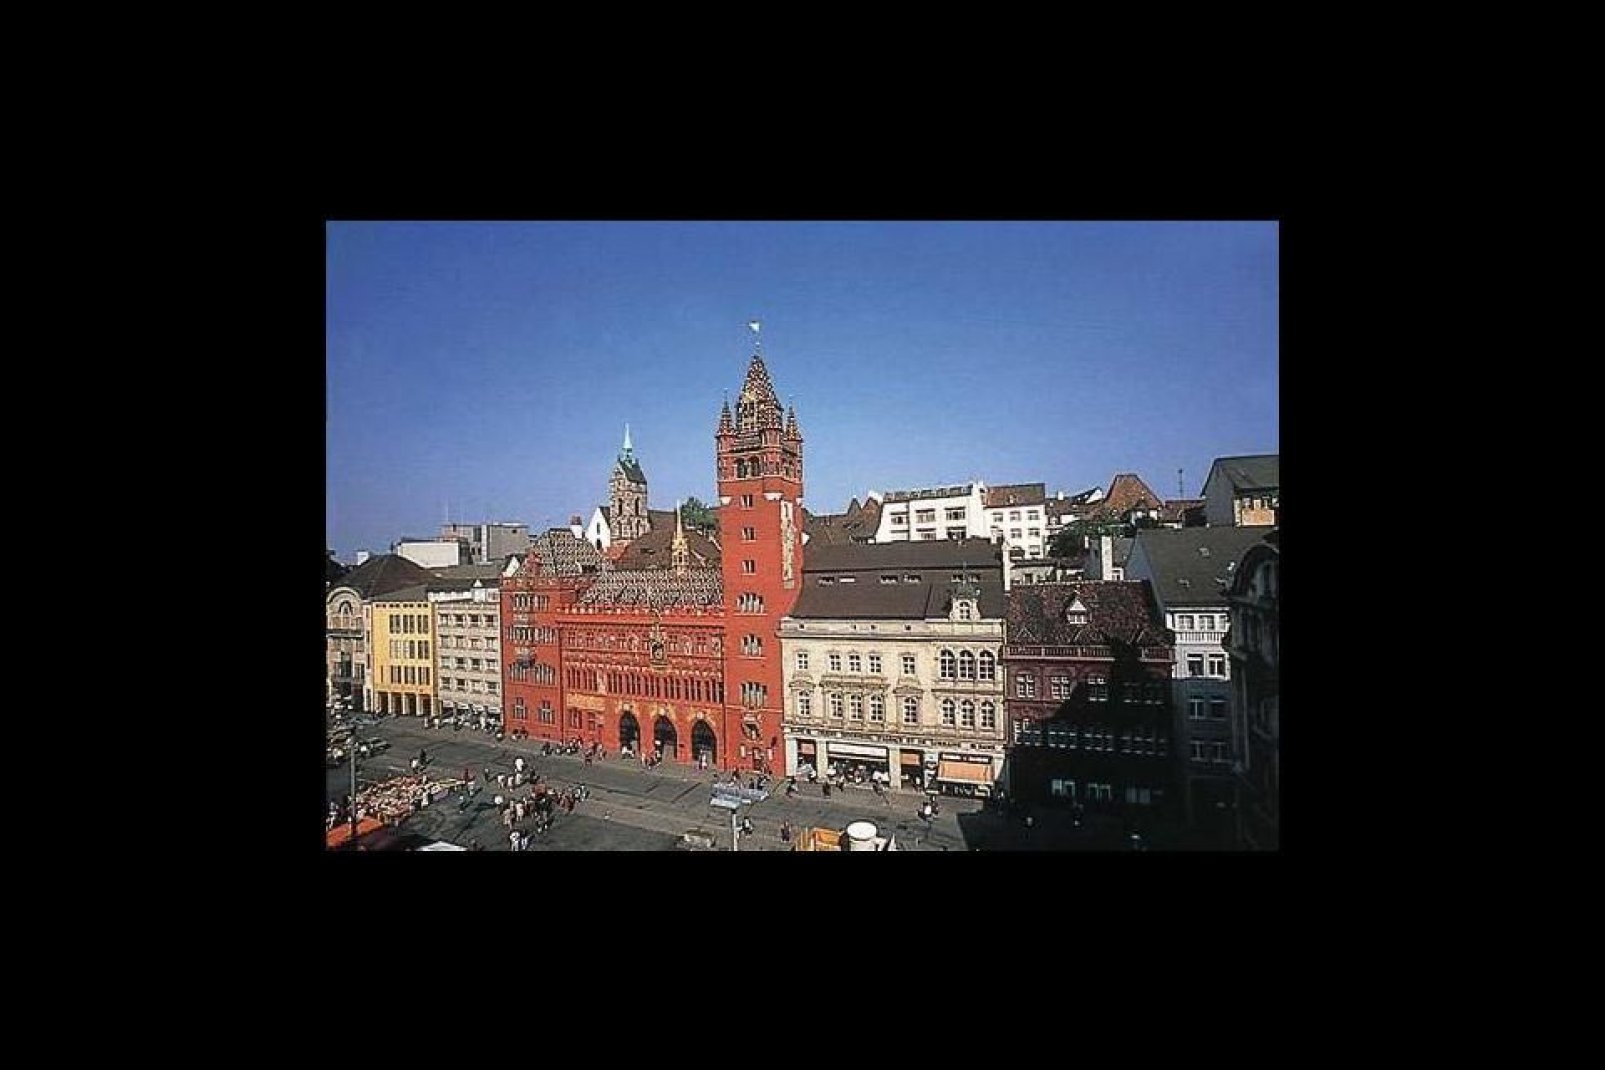 Das Rathaus ist ein aufflliges farbenprchtiges Gebude, das auf dem Marktplatz in der Altstadt von Basel steht.